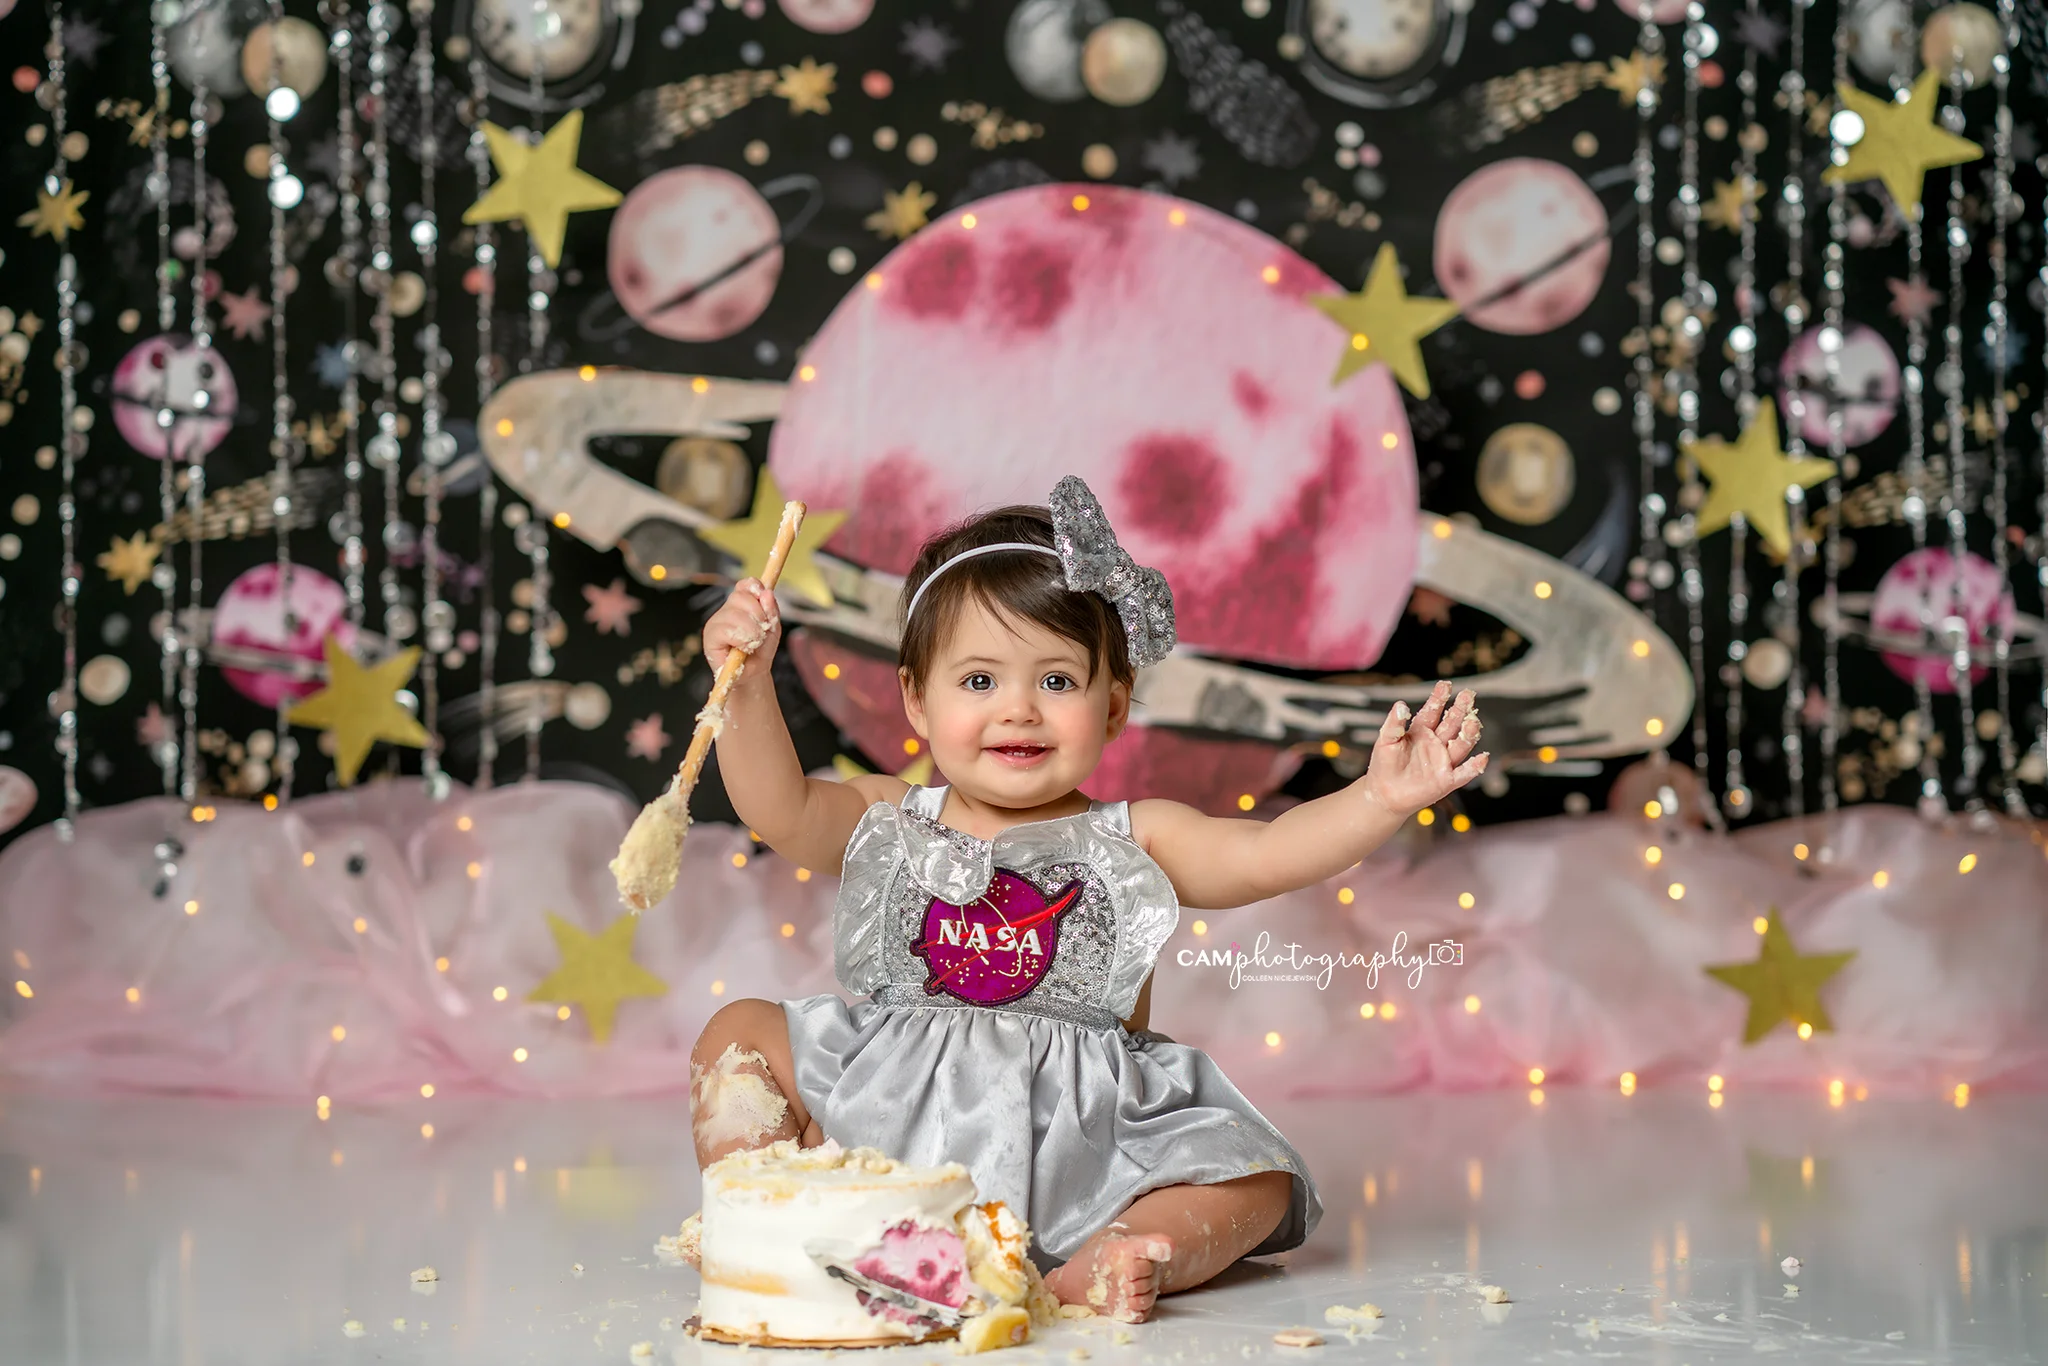 Fondali Pink Dairy Farm Kids Girl Birthday Cake Smash Photography puntelli bambino adulto Photocall sfondi di campagna